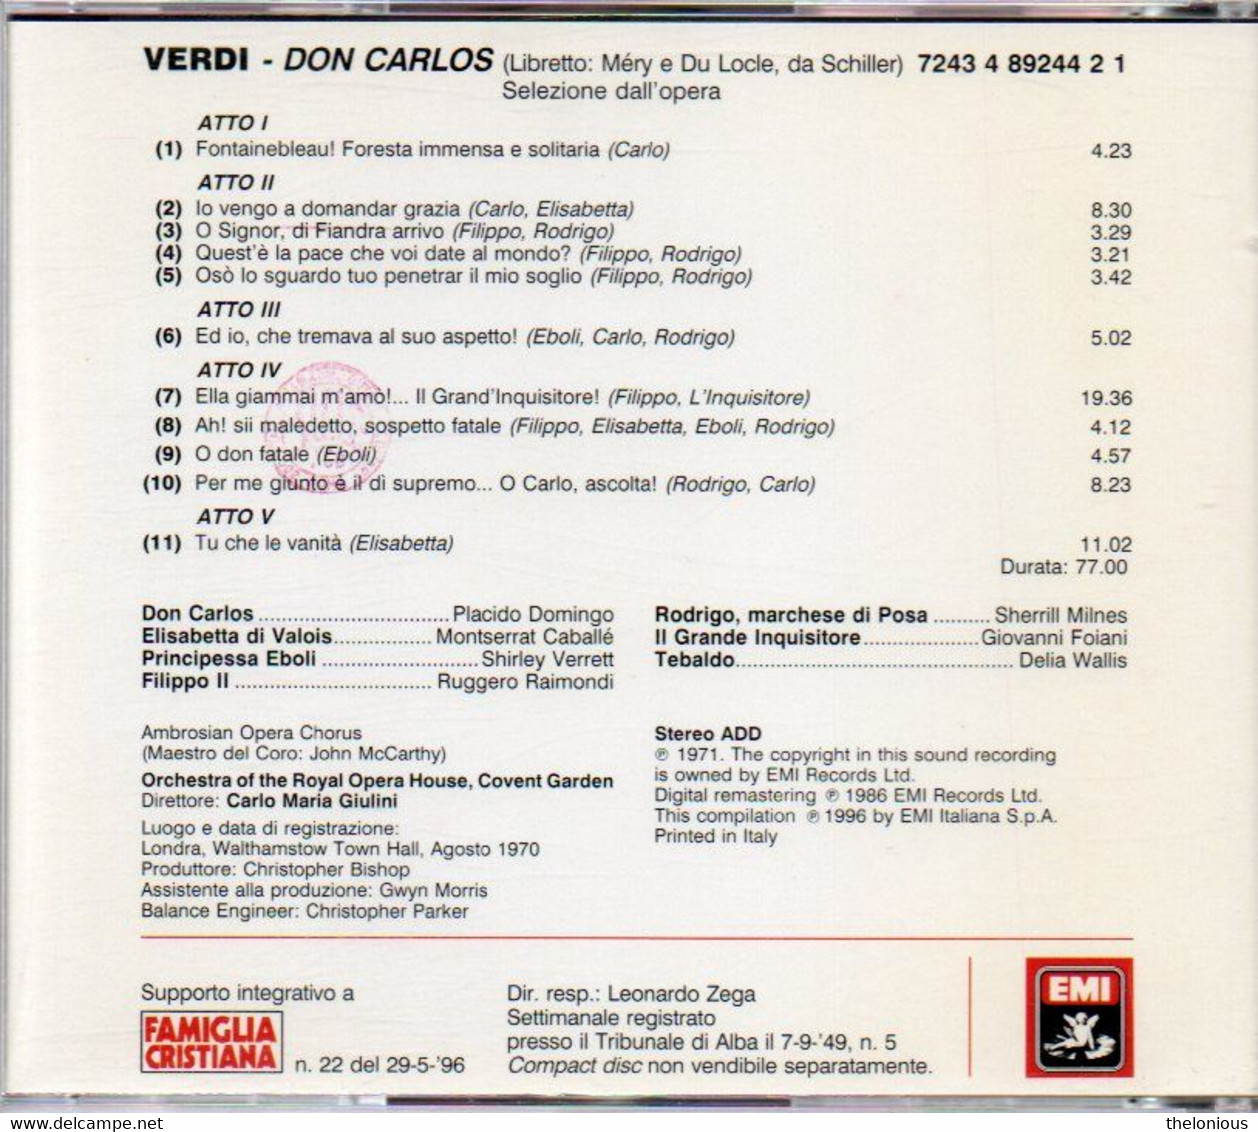 # CD - Giuseppe Verdi: DON CARLOS - Le Pagine Più Belle - Opera